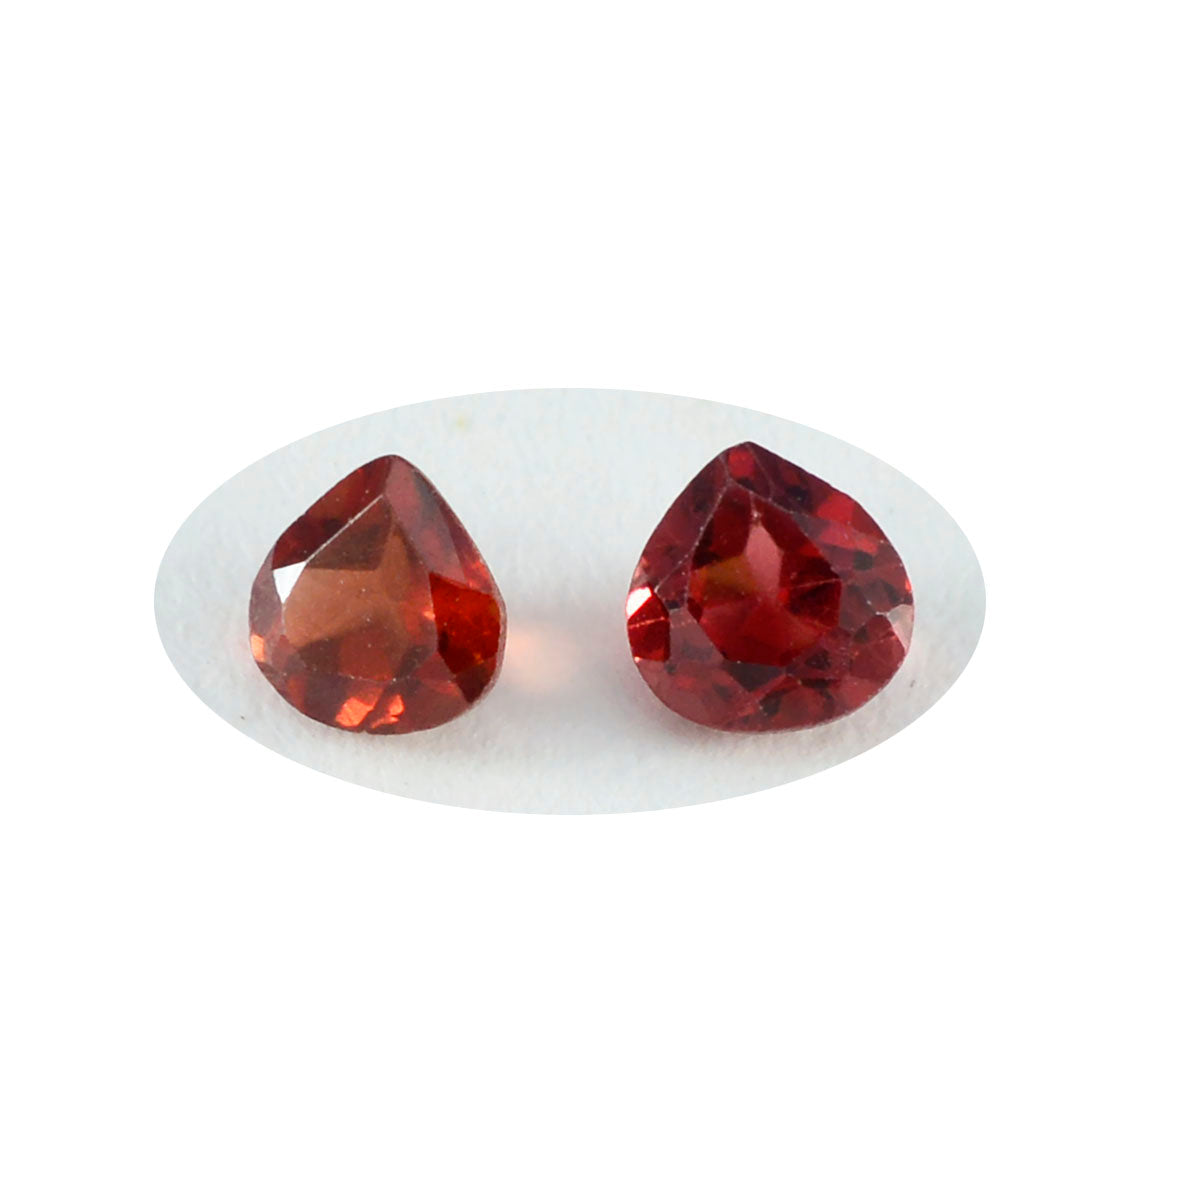 riyogems 1 шт. натуральный красный гранат ограненный 7x7 мм в форме сердца, драгоценный камень удивительного качества, свободный драгоценный камень